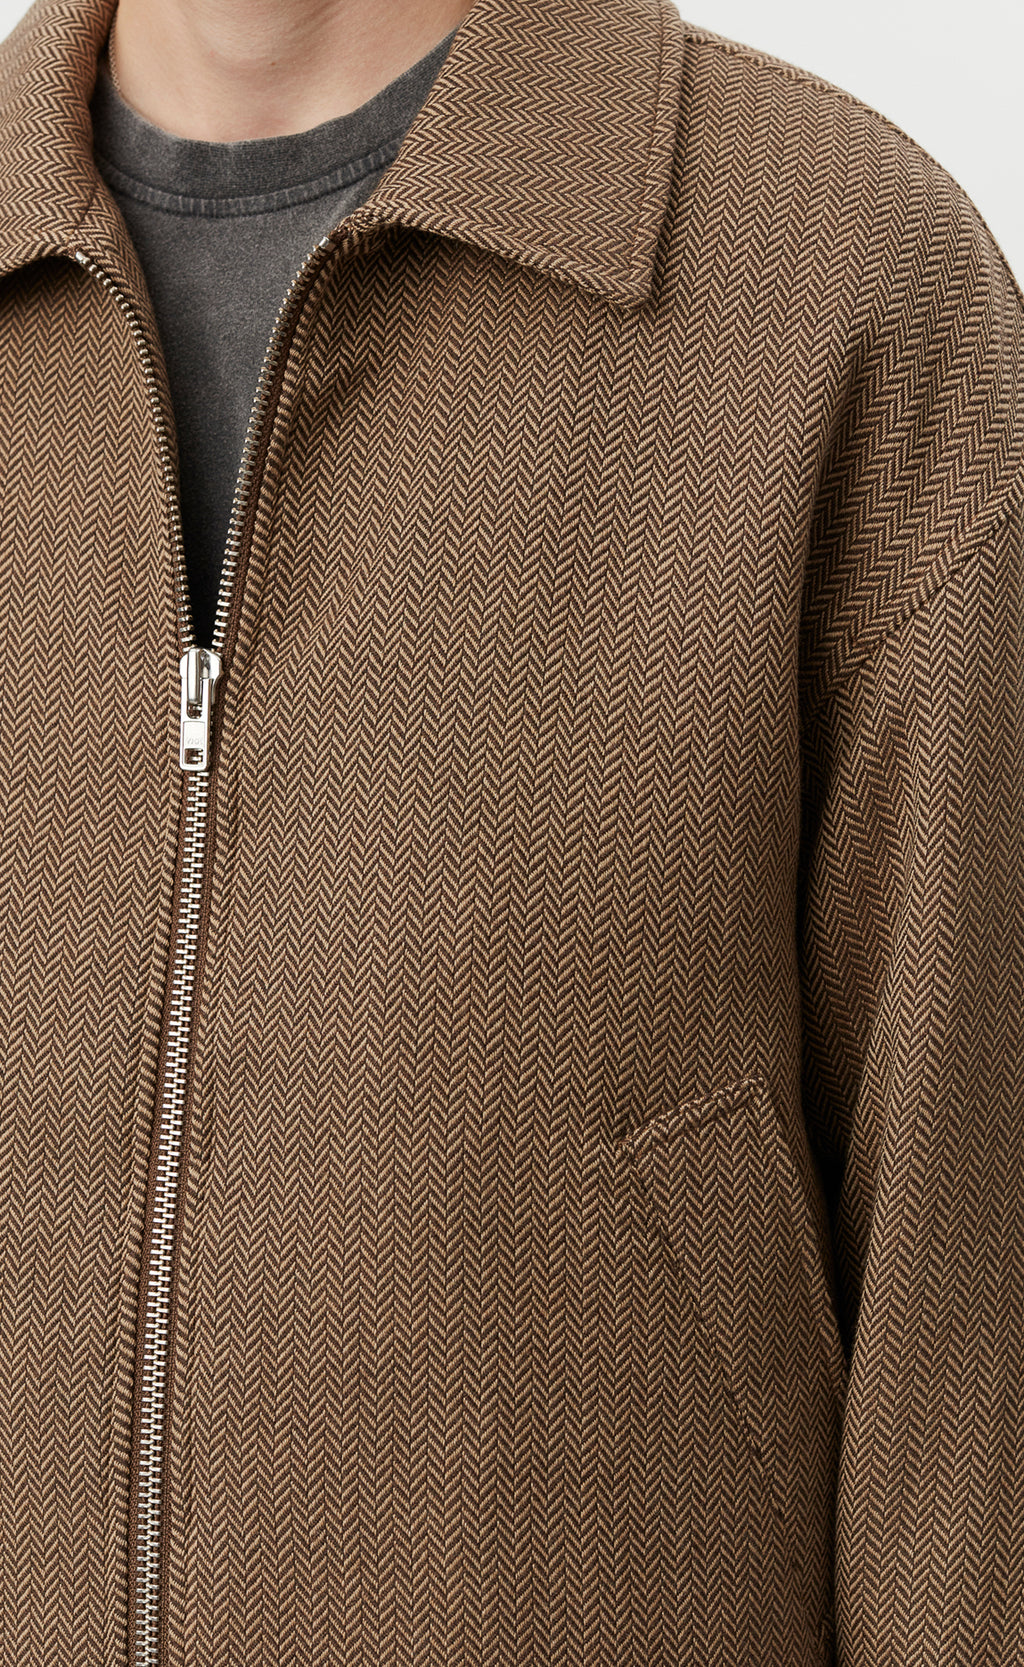 Mail Jacket - Brown Herringbone Wool